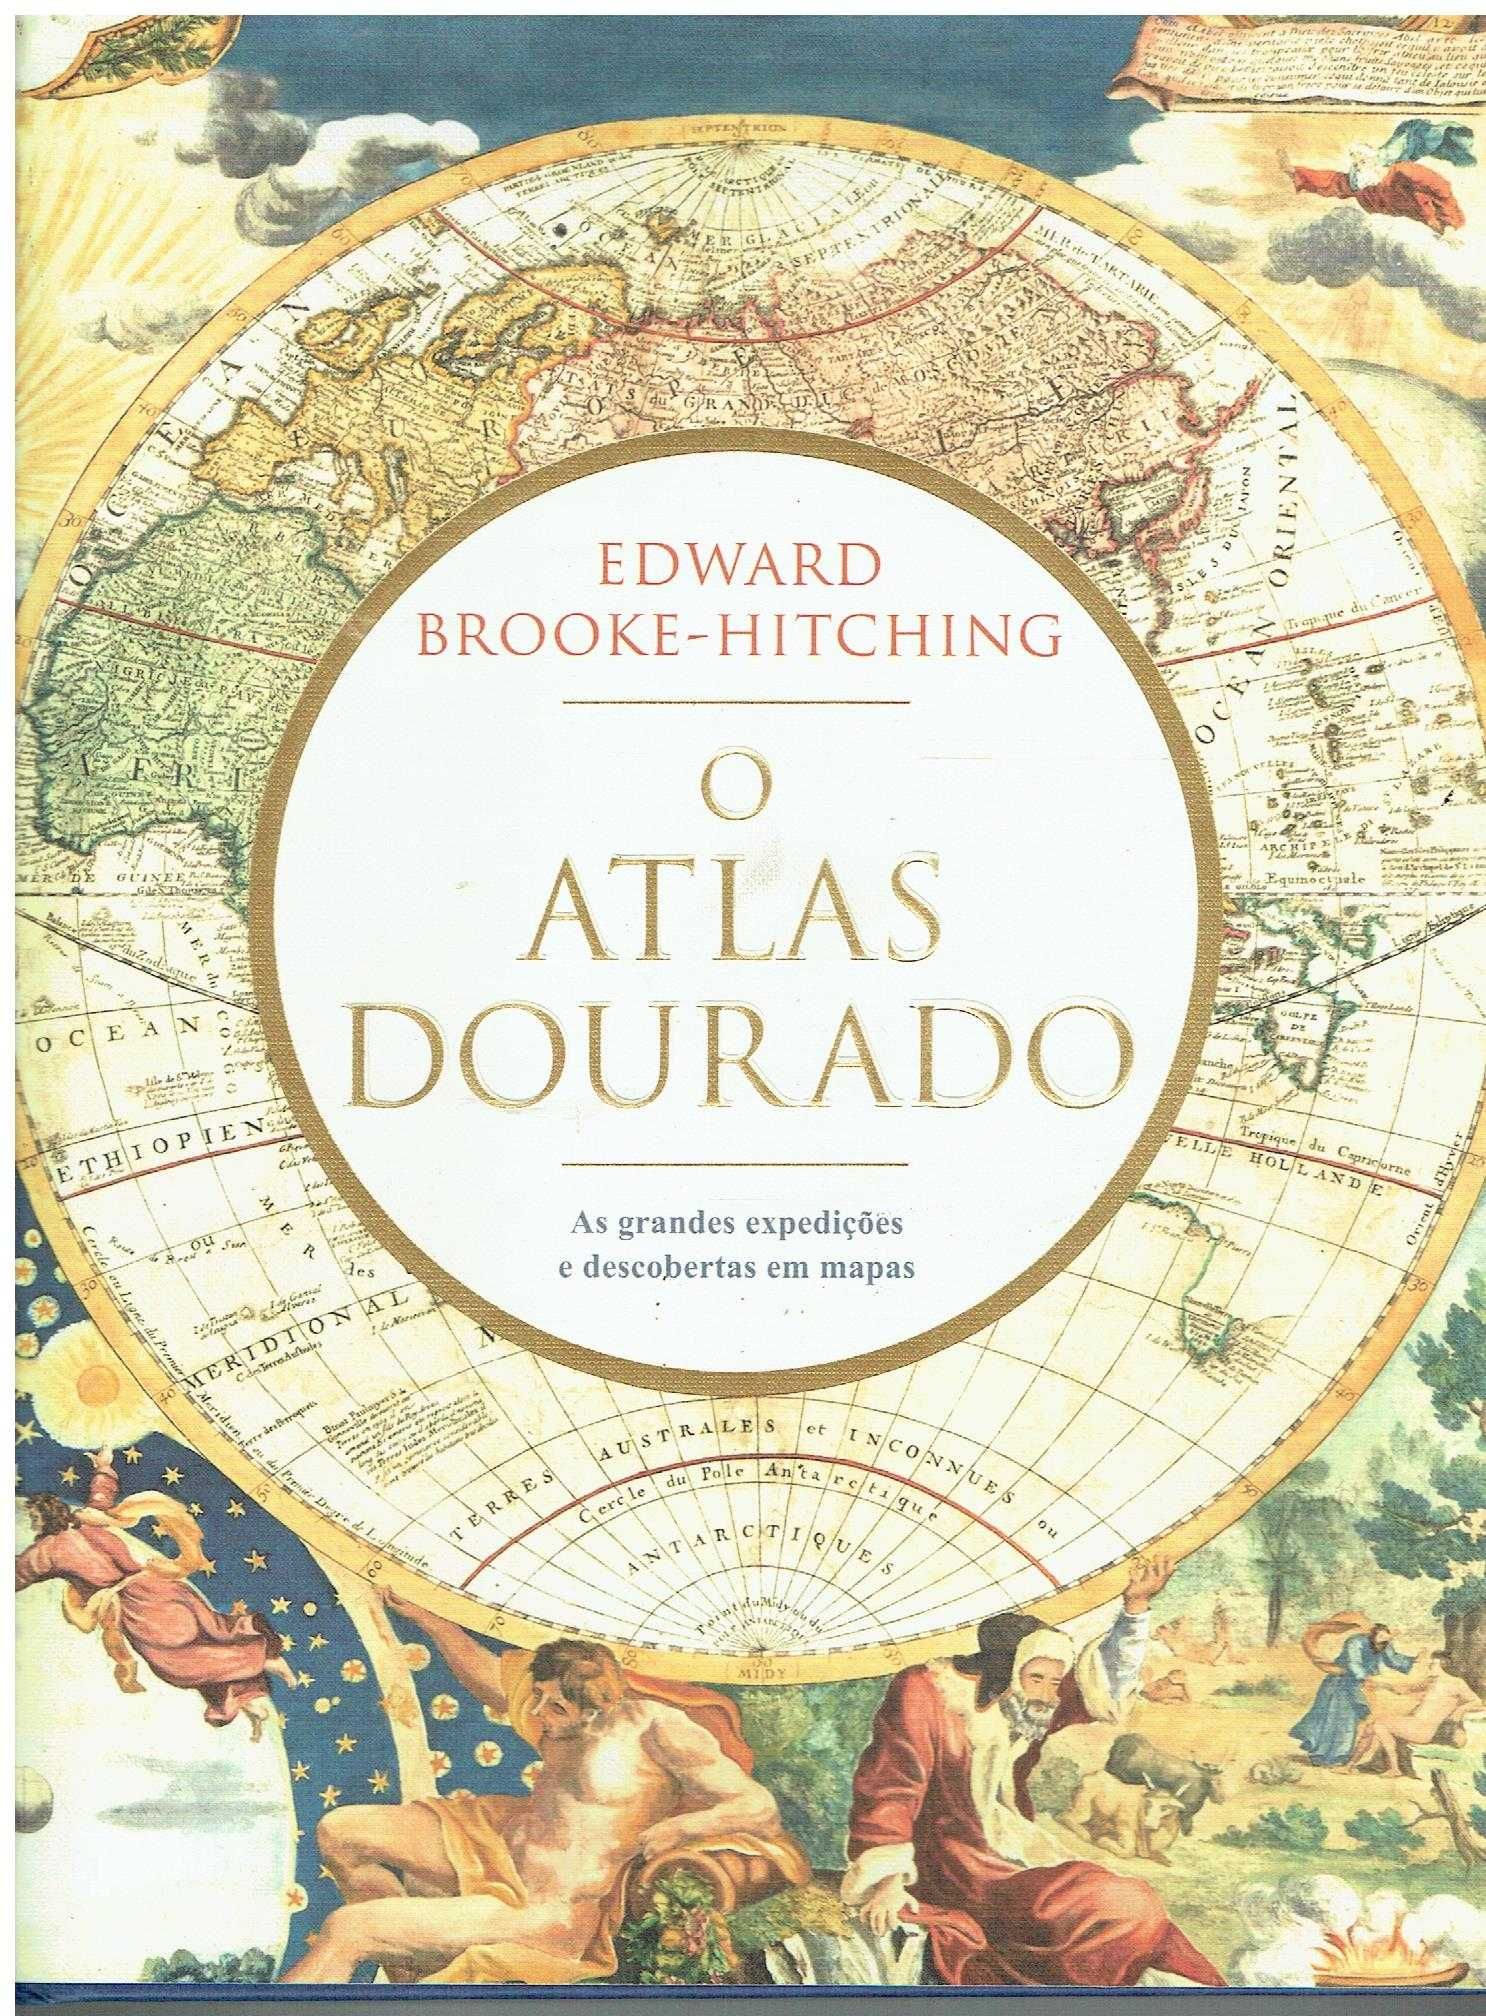 14032

O Atlas Dourado
de Edward Brooke-Hitching